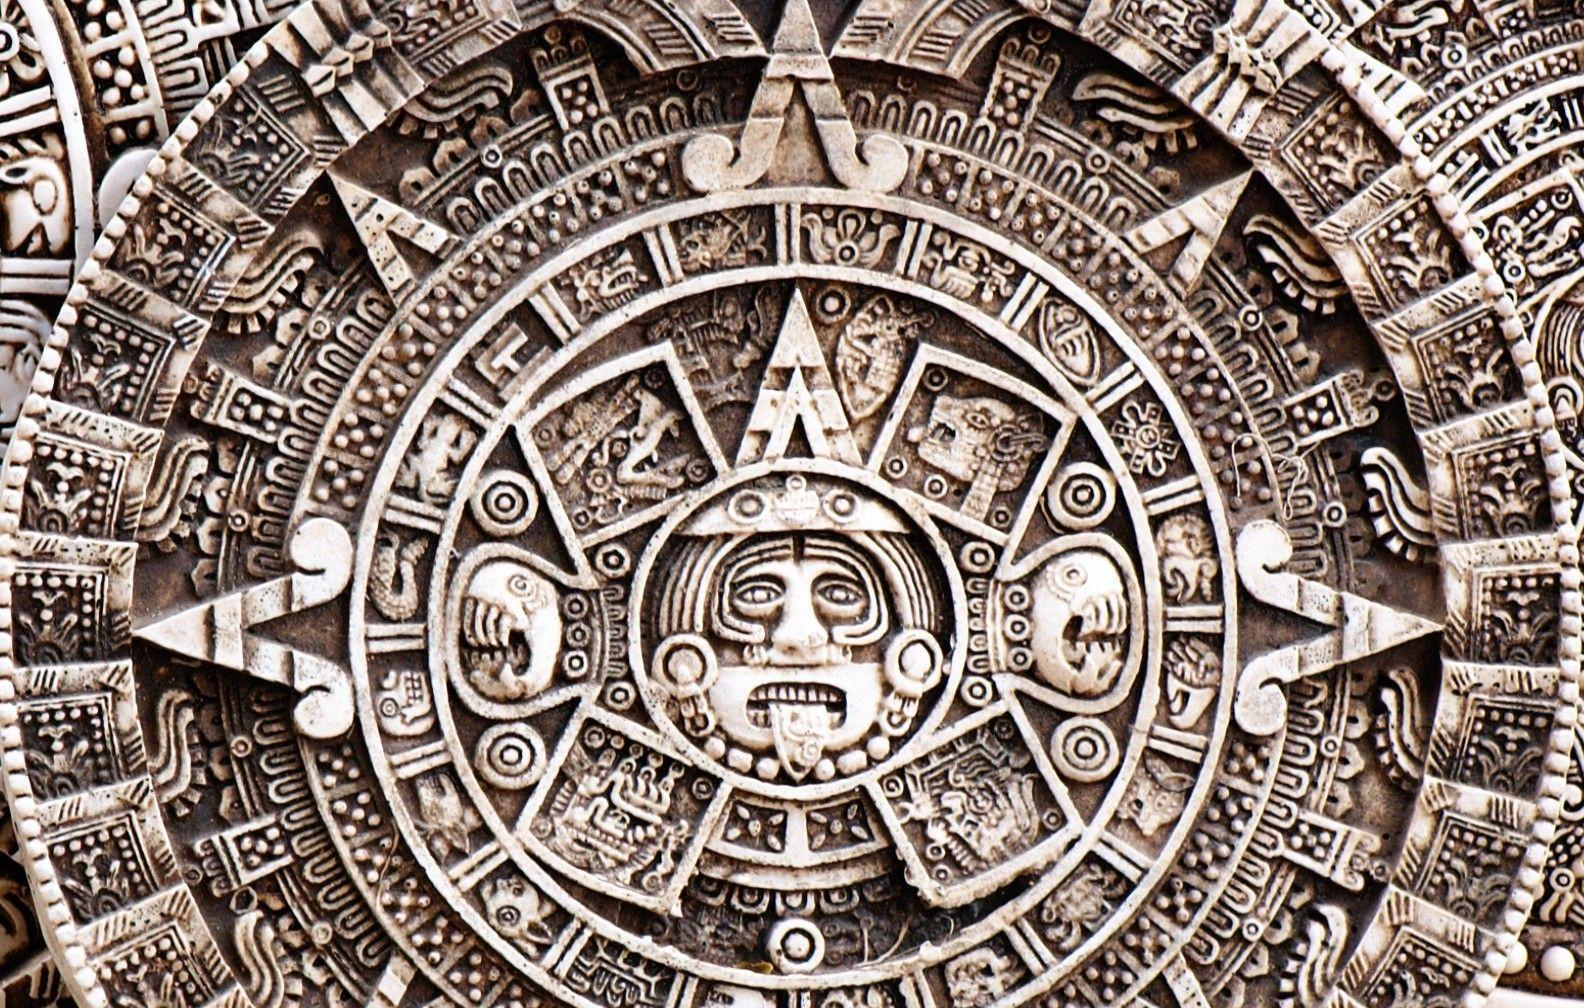 Mayan Calendar Wallpapers - Top Free Mayan Calendar Backgrounds ...